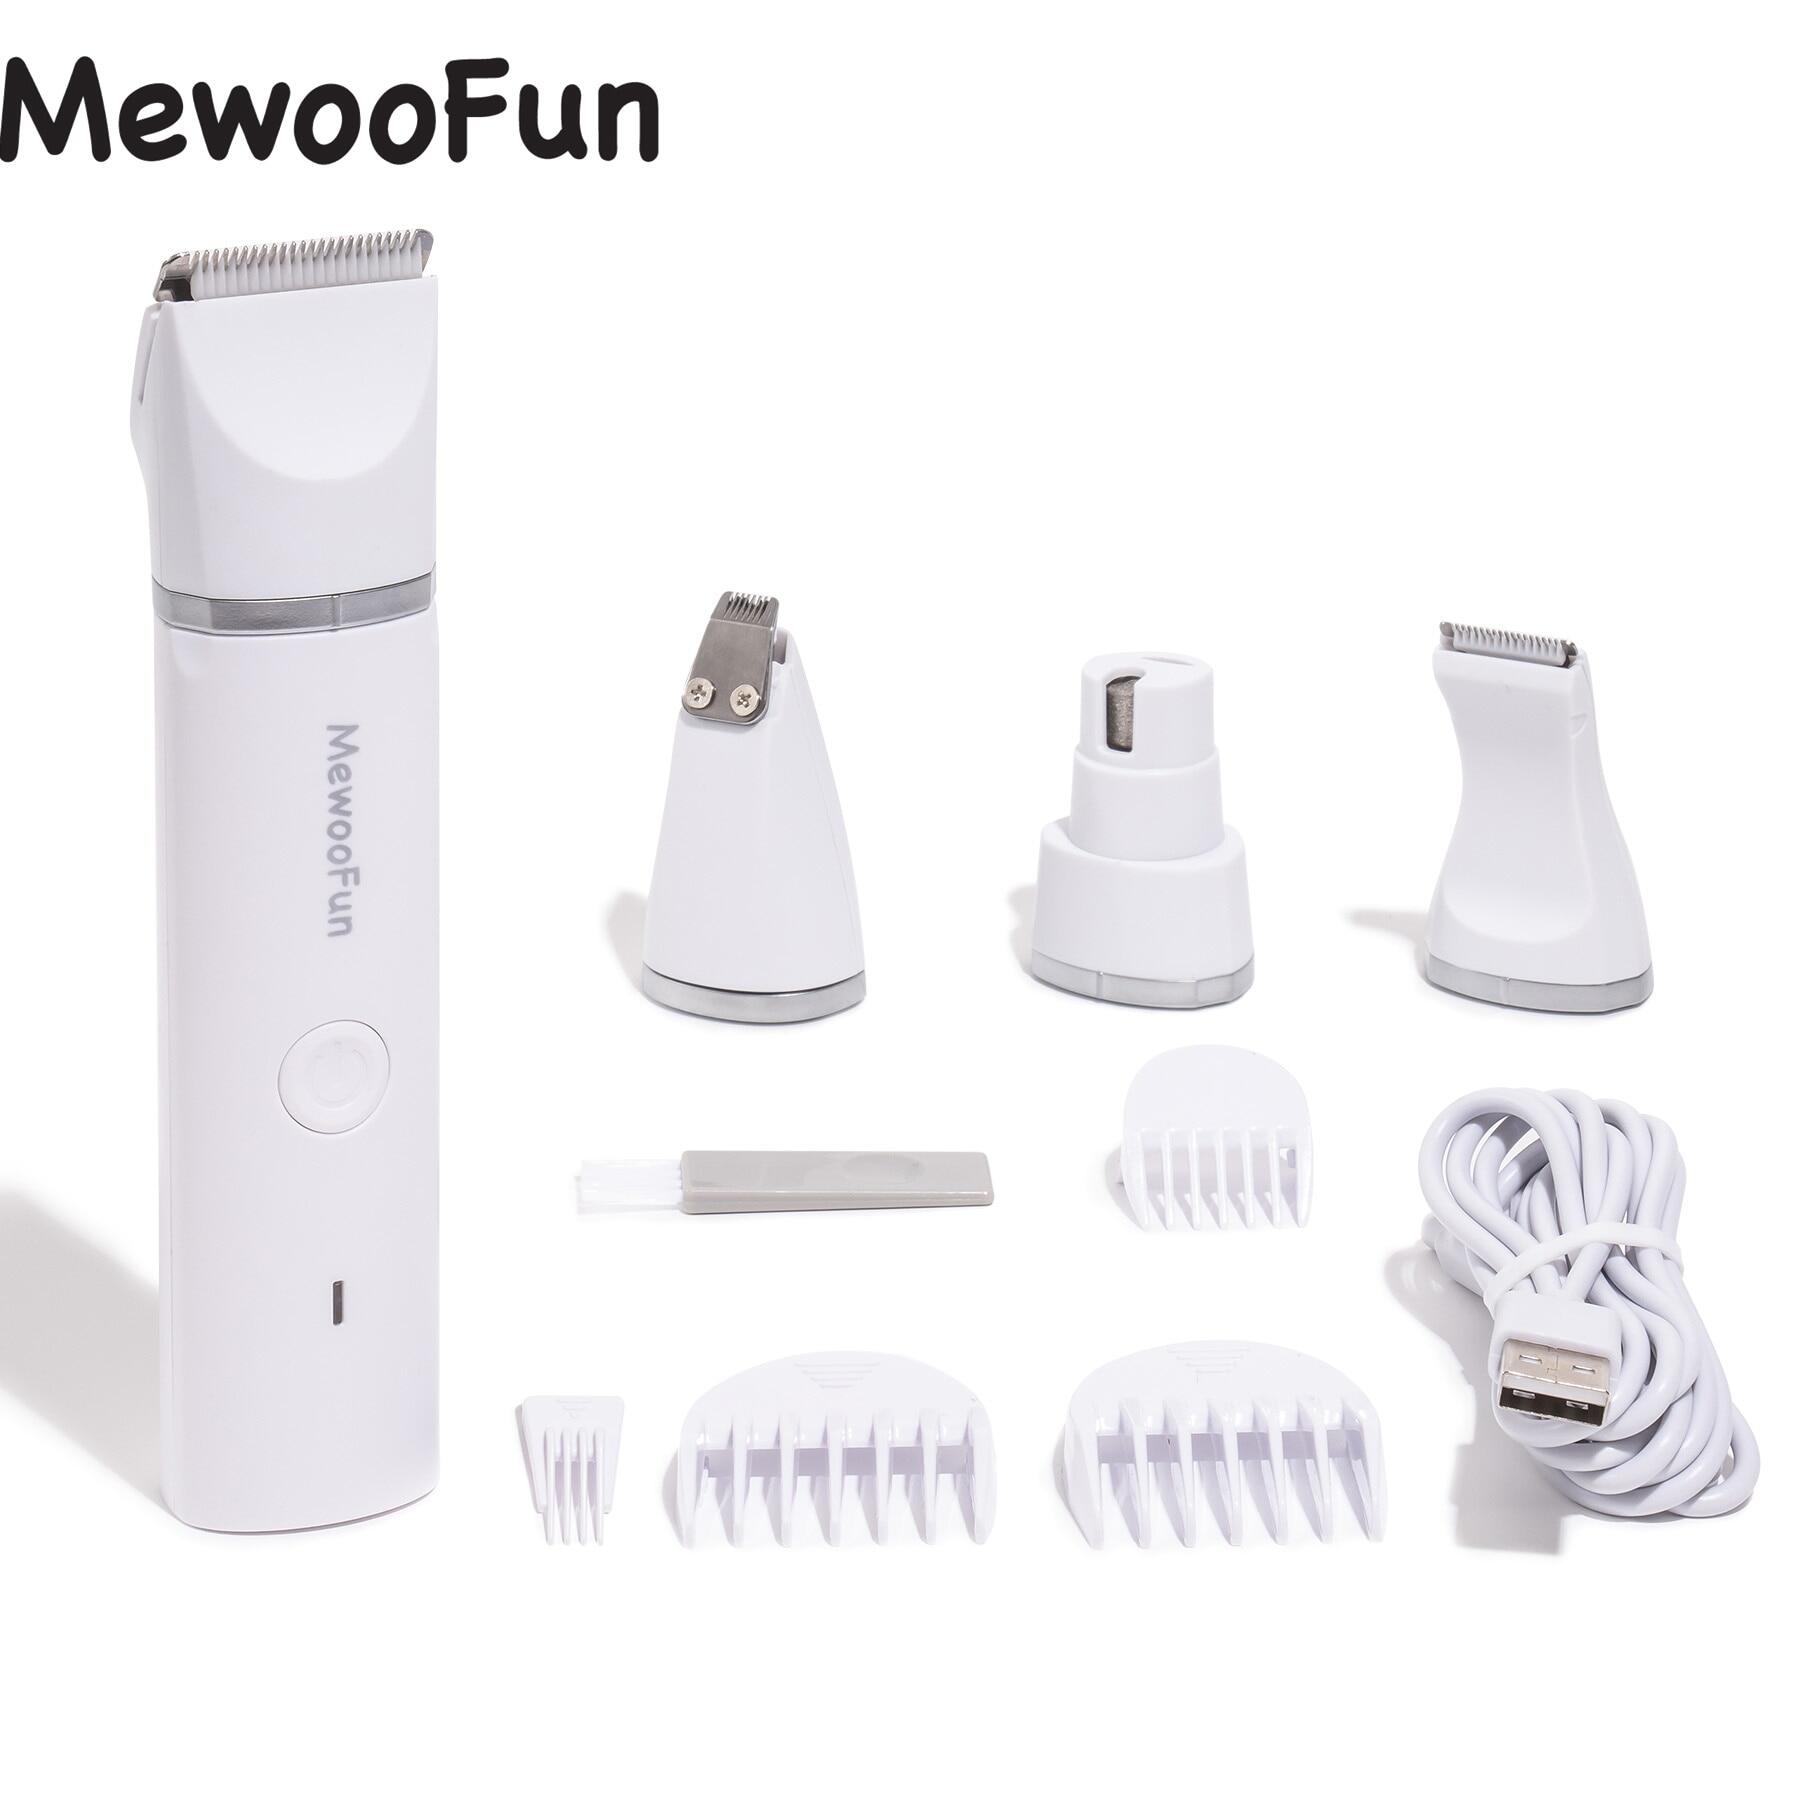 Mewoofun 4 Trong 1 Pet Tông đơ cắt tóc điện Với 4 Lưỡi tông đơ chải chuốt